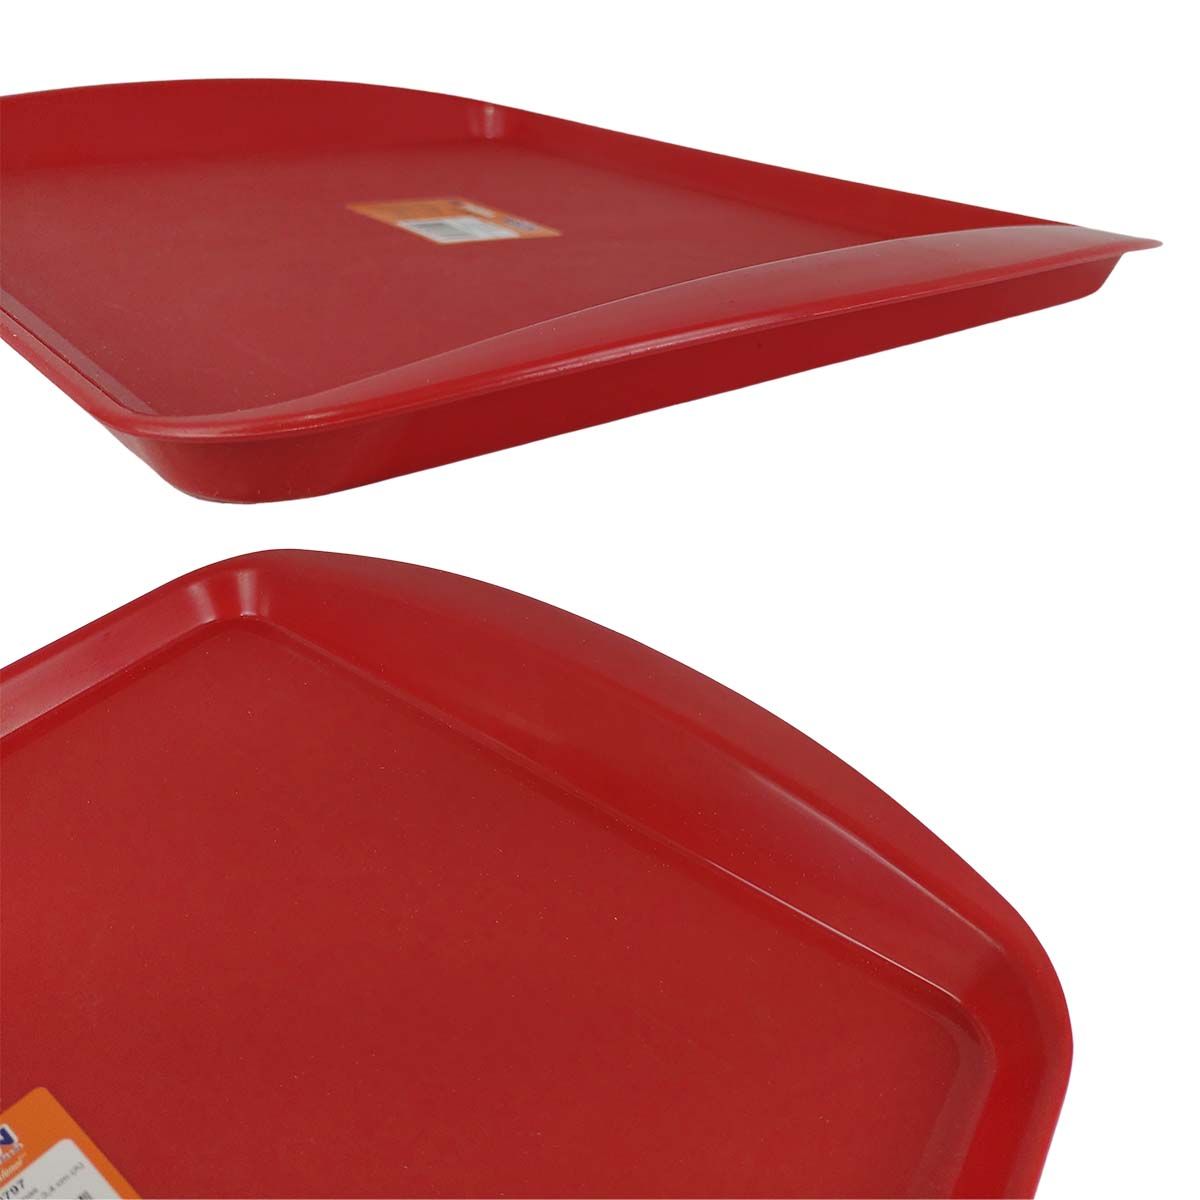 Kit 5x Bandeja Fast-Food Vermelha 43,5x30 Cm - Pleion #5